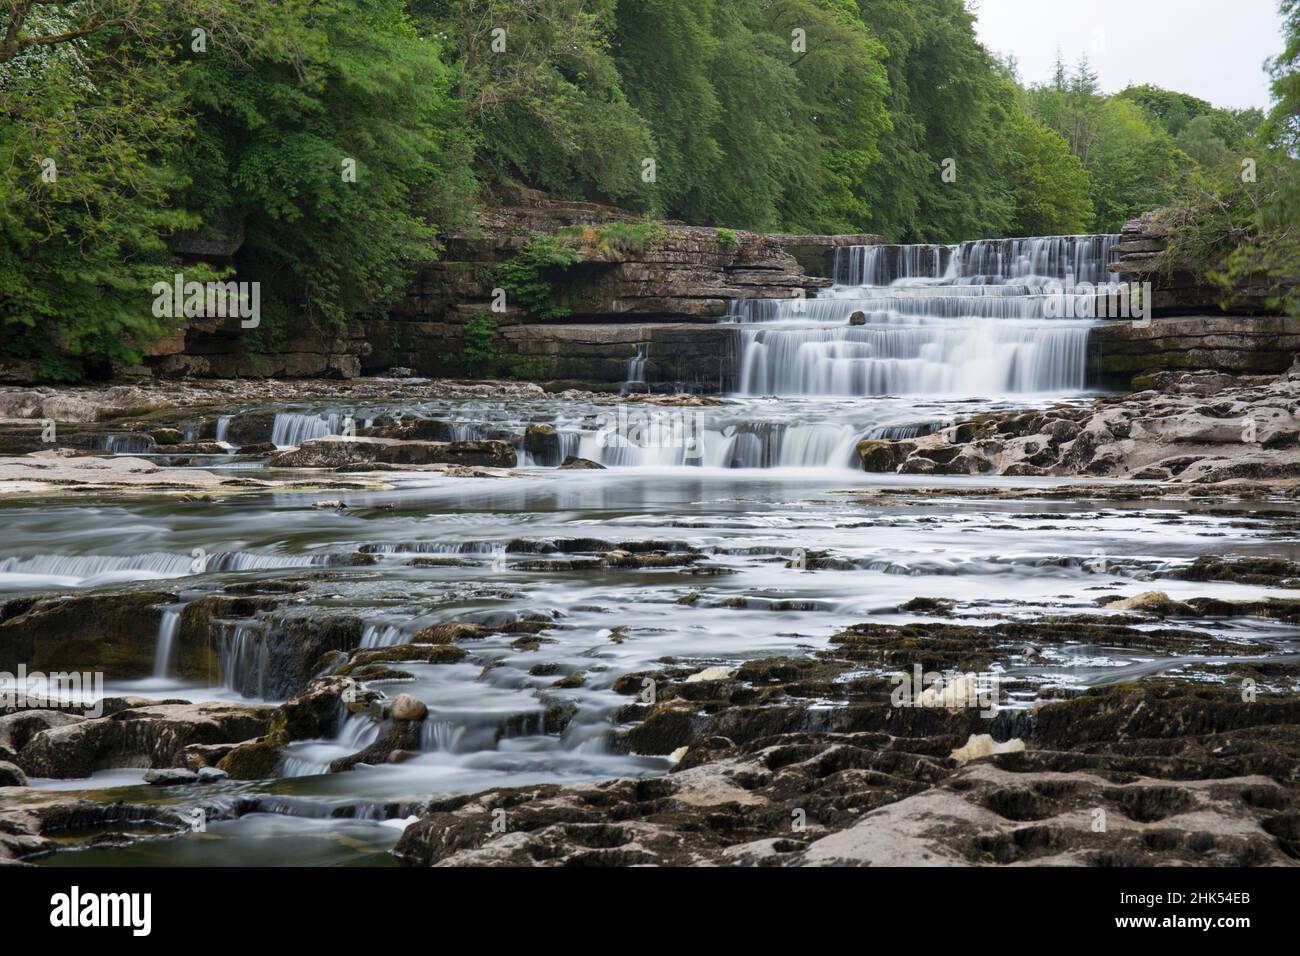 Lower Aysgarth Falls am Fluss Ure, in der Nähe von Leyburn, Wensleydale, Yorkshire Dales National Park, North Yorkshire, England, Großbritannien, Europa Stockfoto